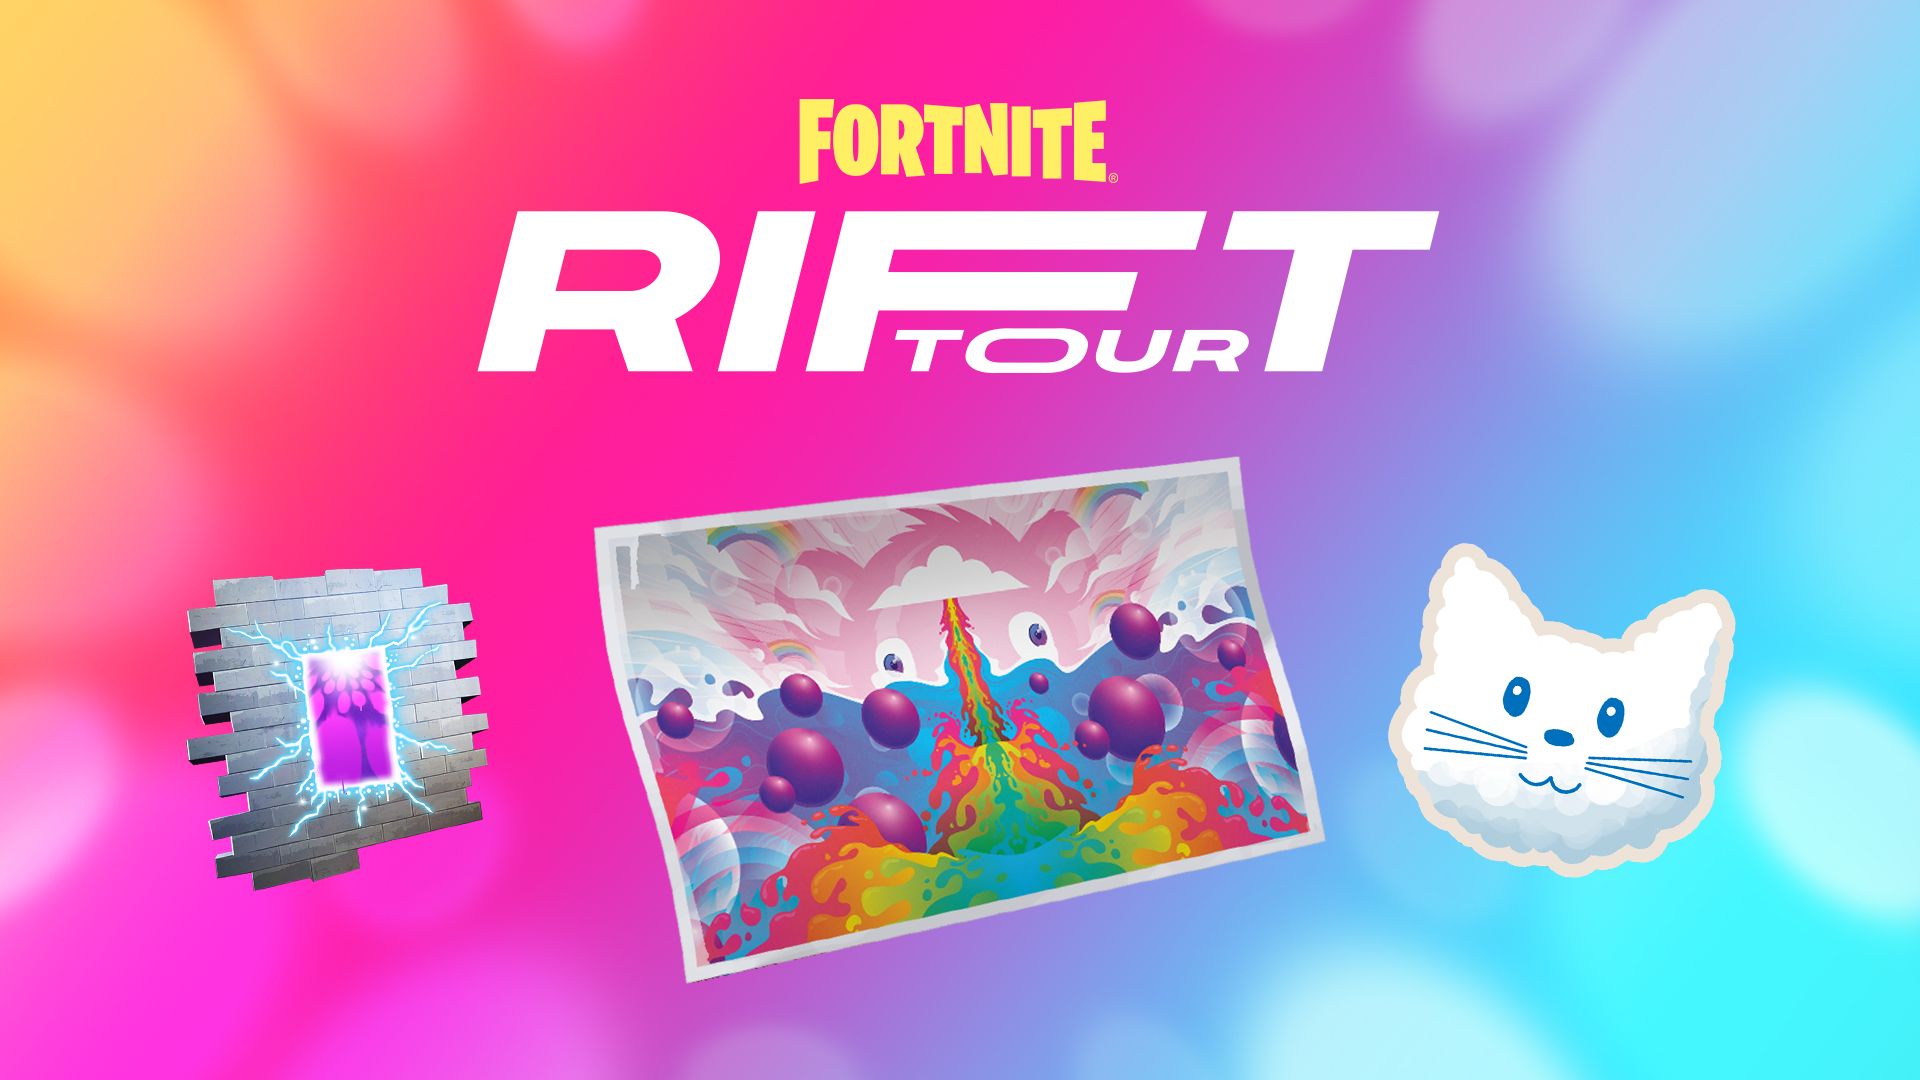 Fortnite The Rift Tour